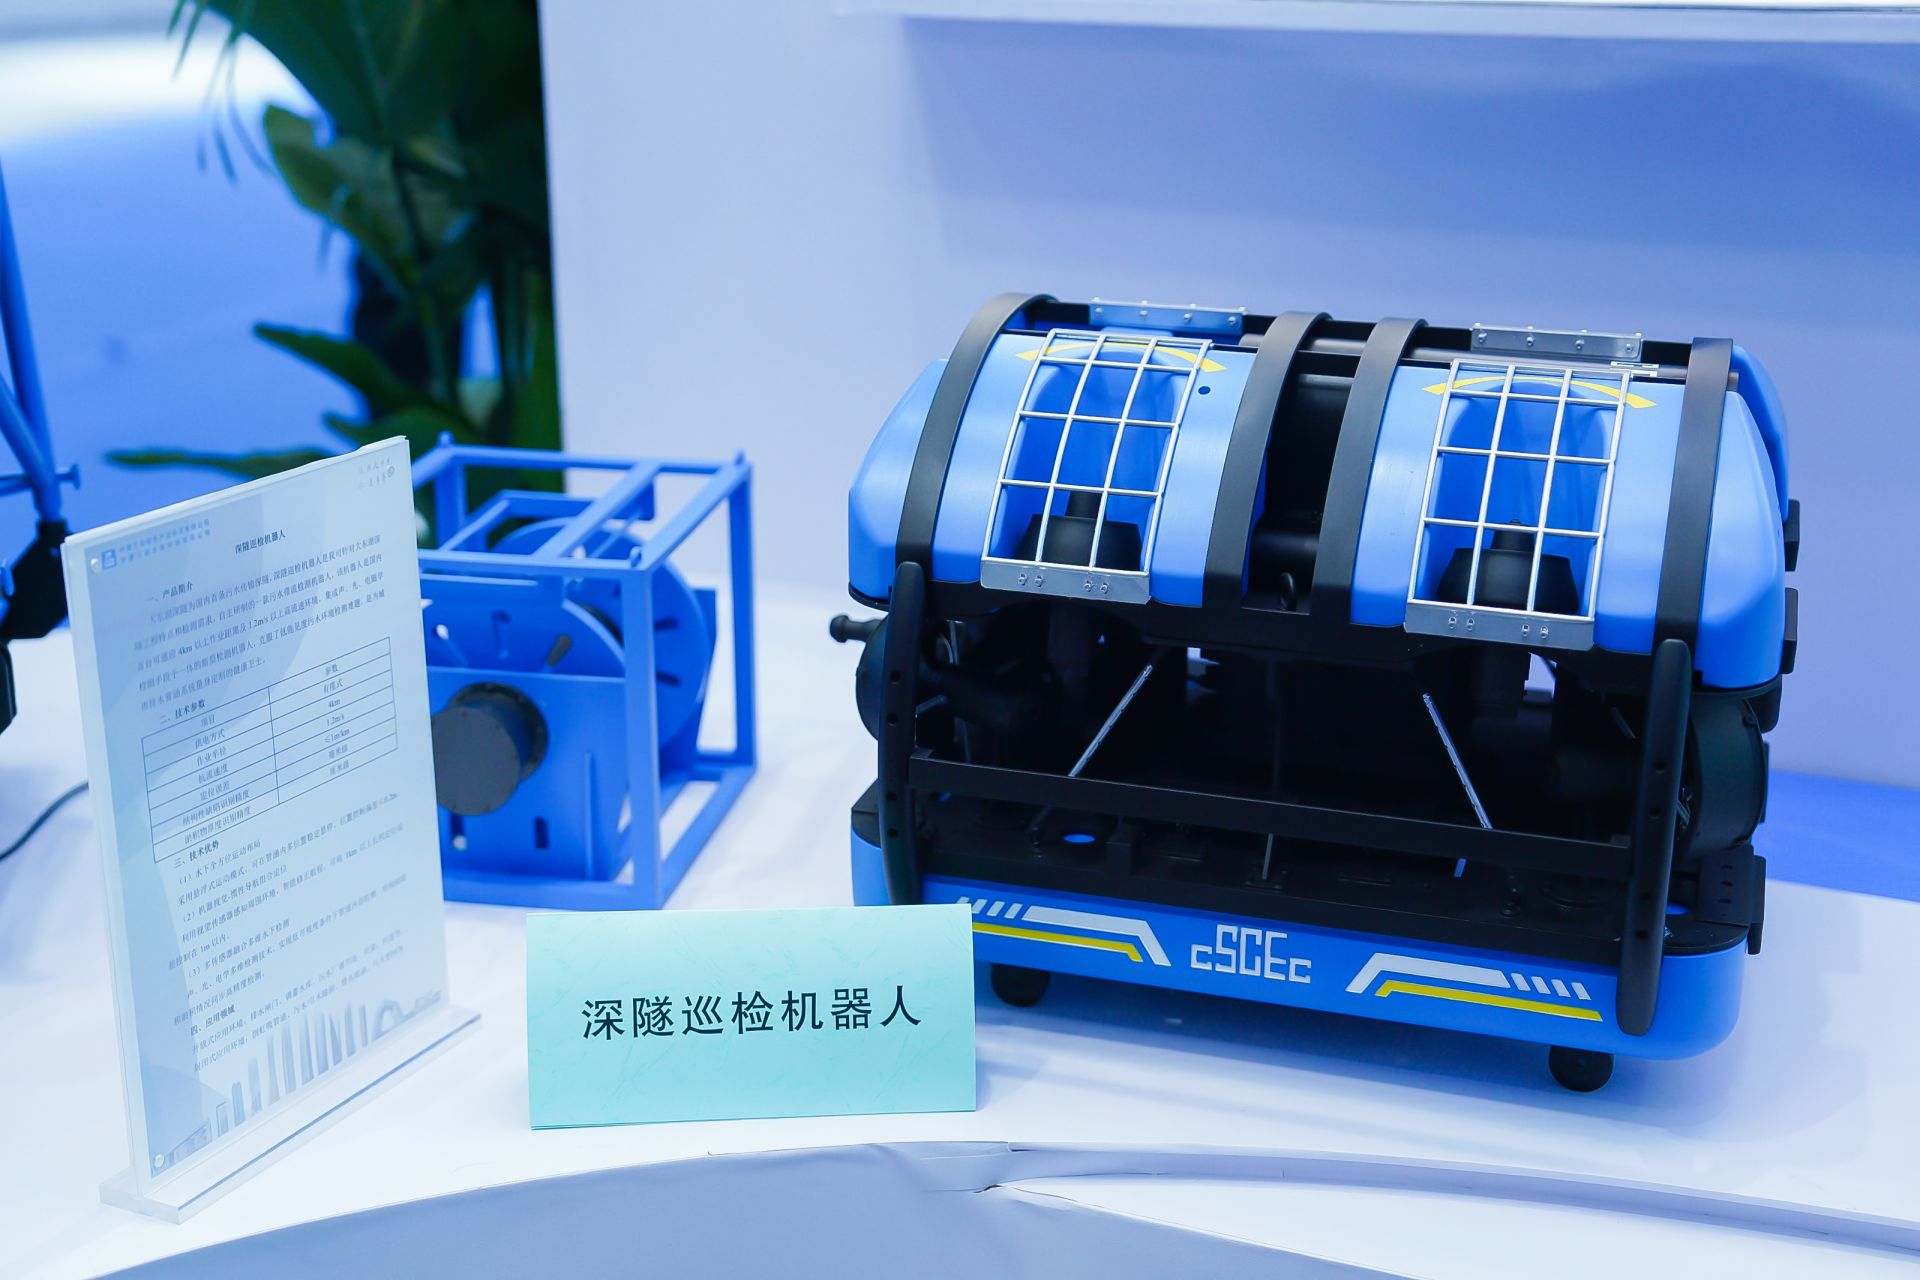 中建三局绿投公司自主研发设计的深隧巡检机器人模型.JPG.JPG